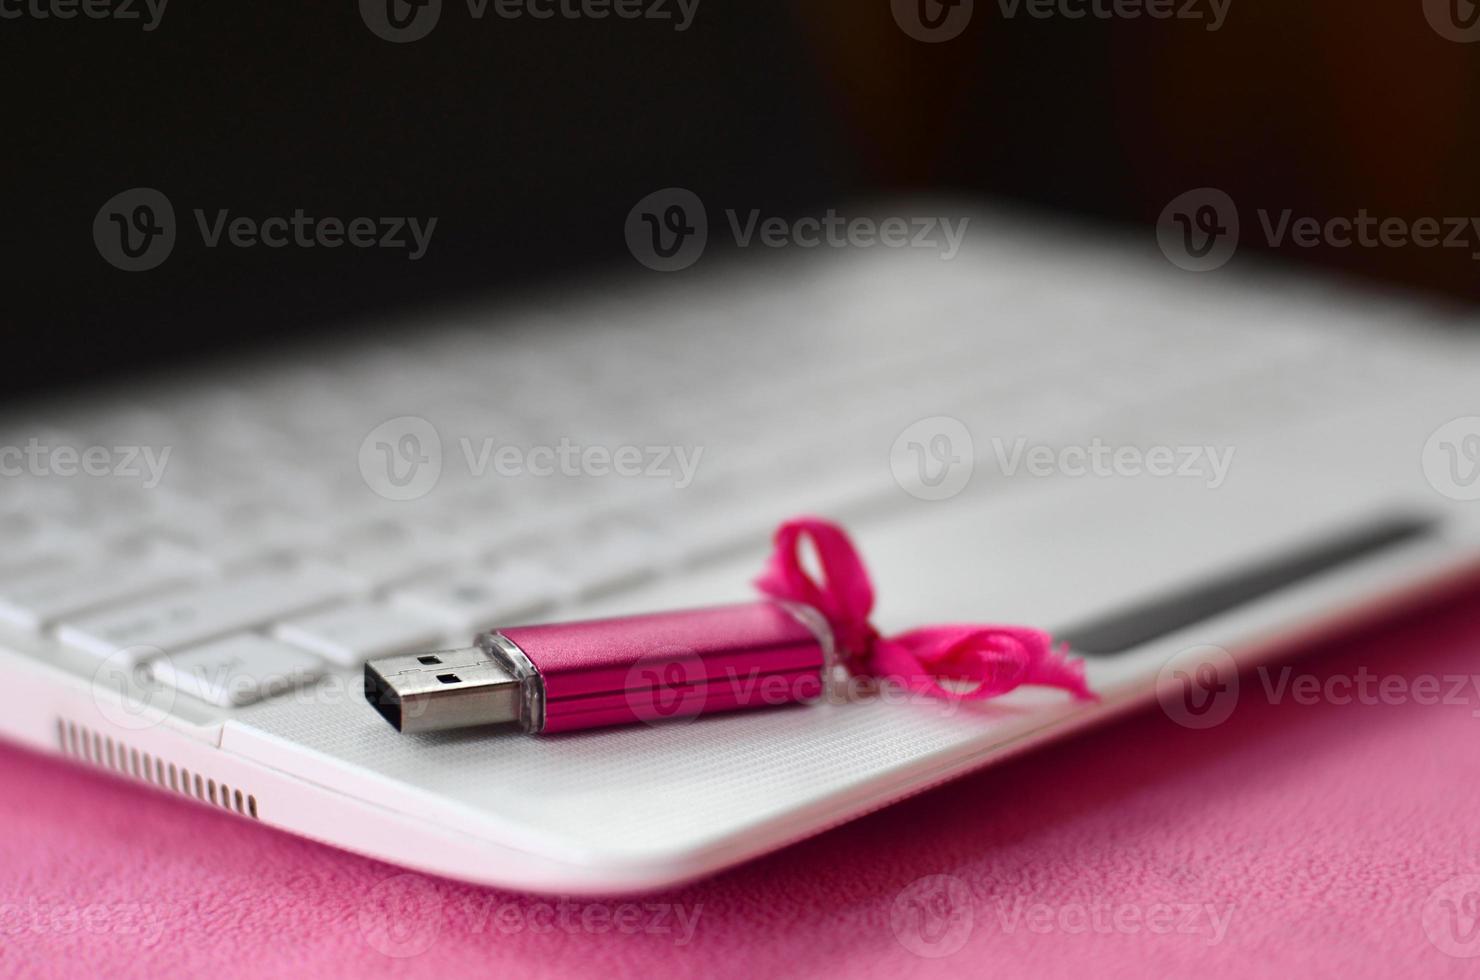 cartão de memória flash usb rosa brilhante com um laço rosa encontra-se em um cobertor de tecido de lã rosa claro macio e peludo ao lado de um laptop branco. design de presente feminino clássico para um cartão de memória foto